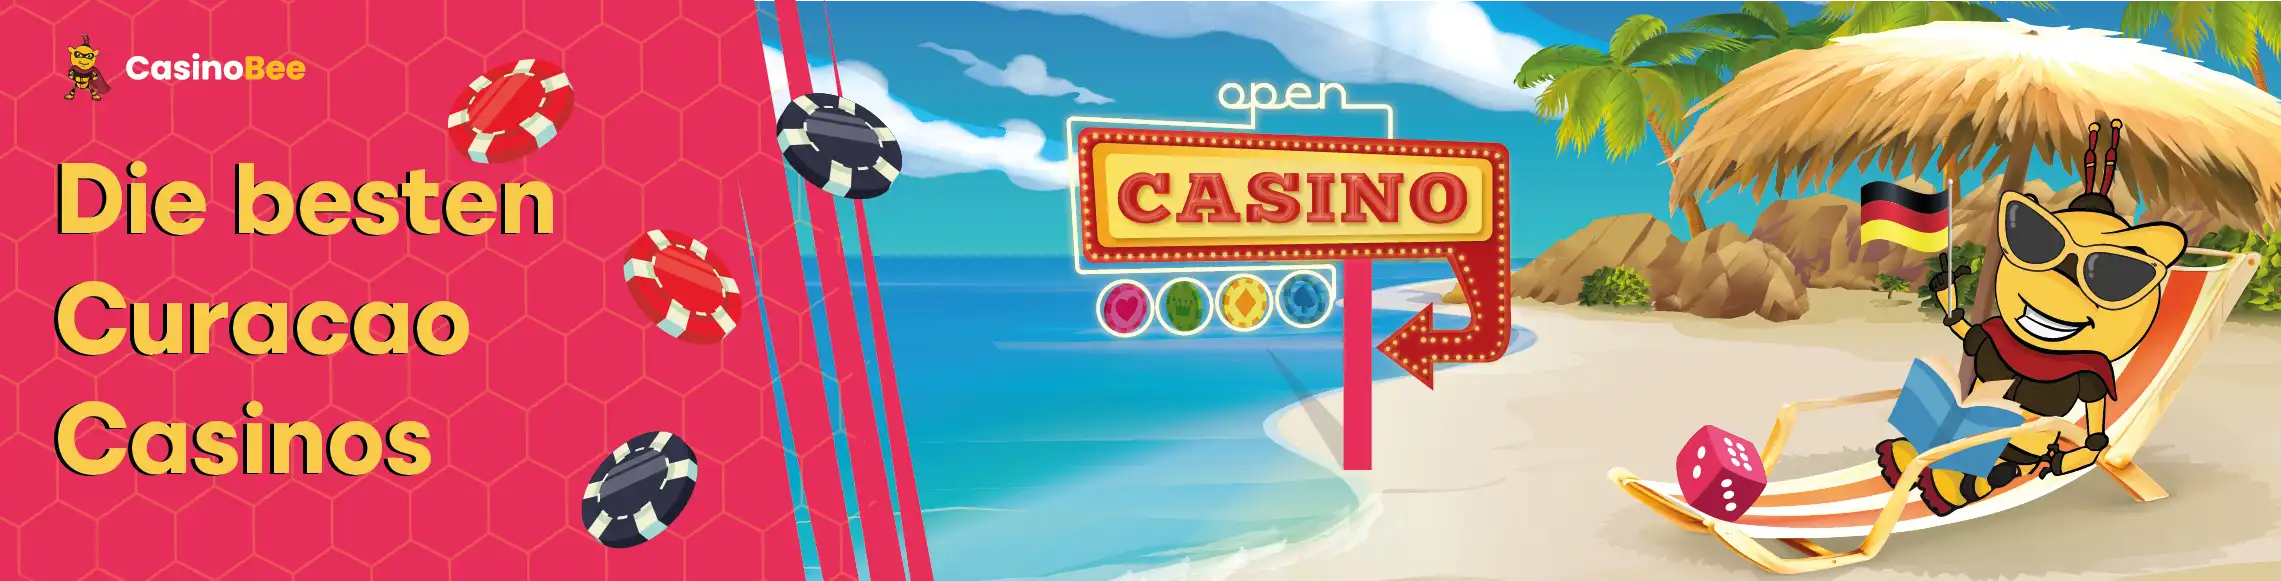 Entdecken Sie die Welt der Curacao Casinos